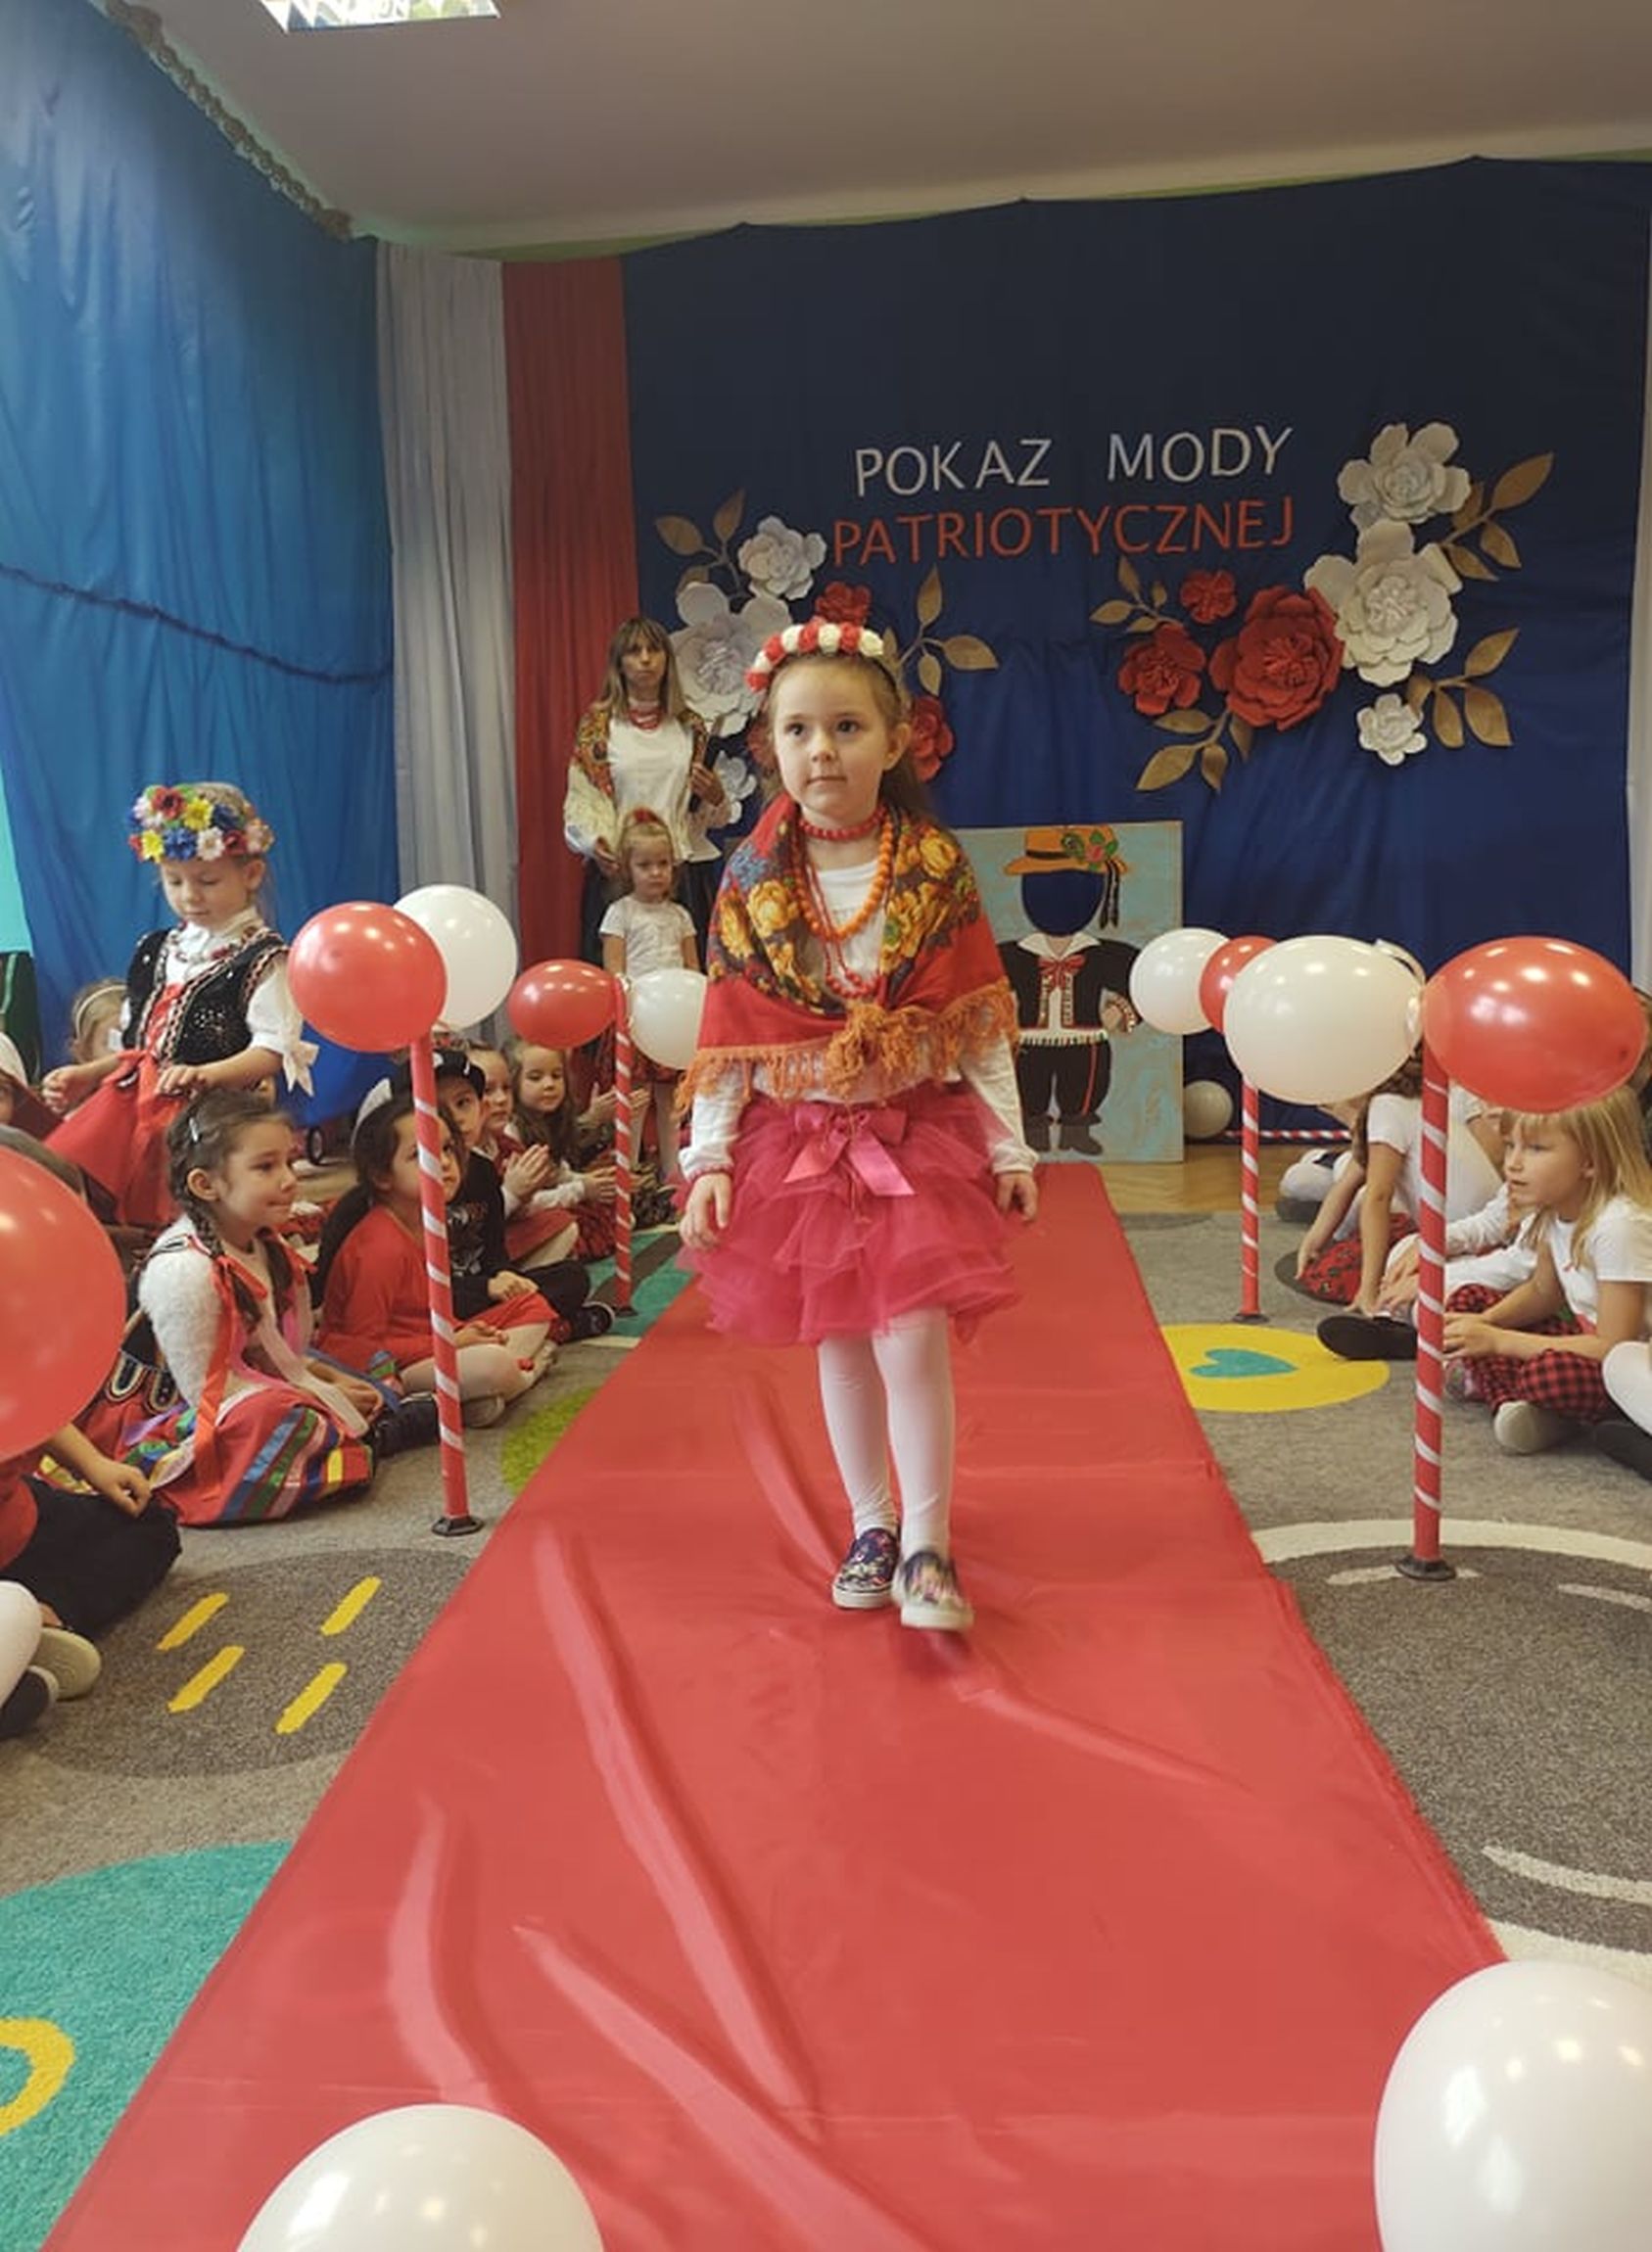 Pokaz mody patriotycznej w Przedszkolu nr 4 w Lubartowie (zdjęcia) - Zdjęcie główne